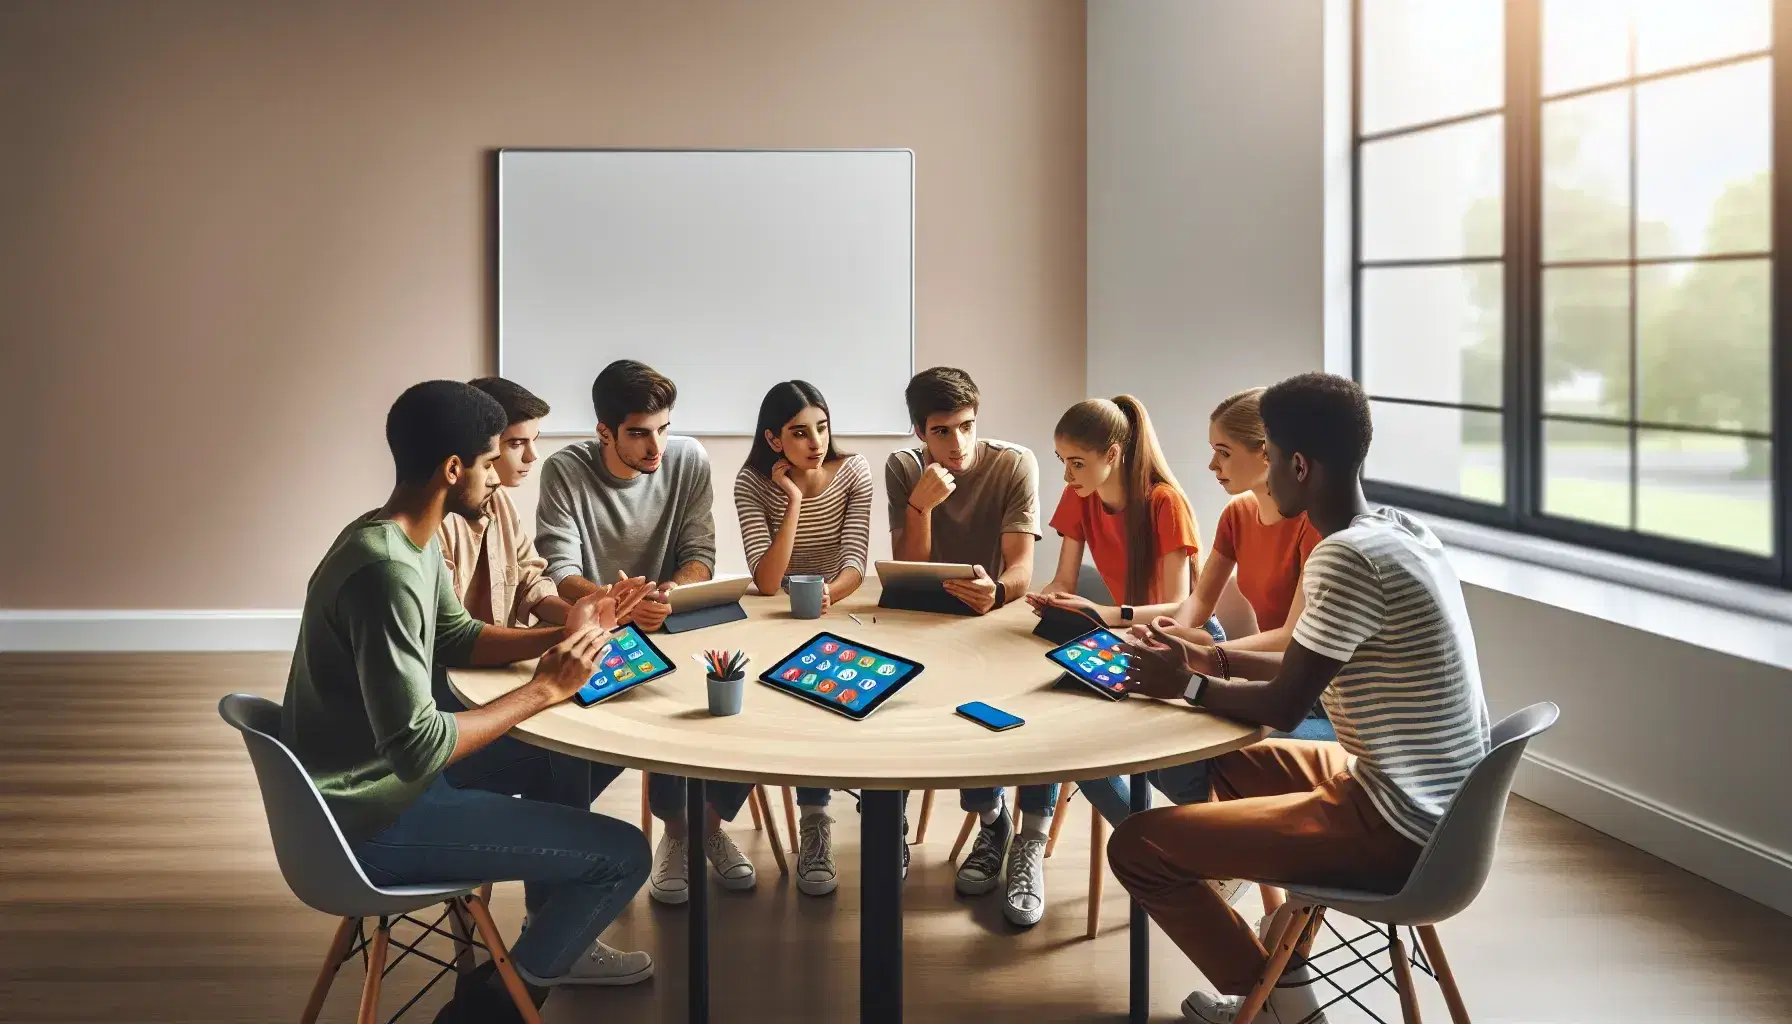 Grupo de estudiantes diversos interactuando y utilizando dispositivos electrónicos en una mesa redonda de madera en un ambiente iluminado naturalmente.